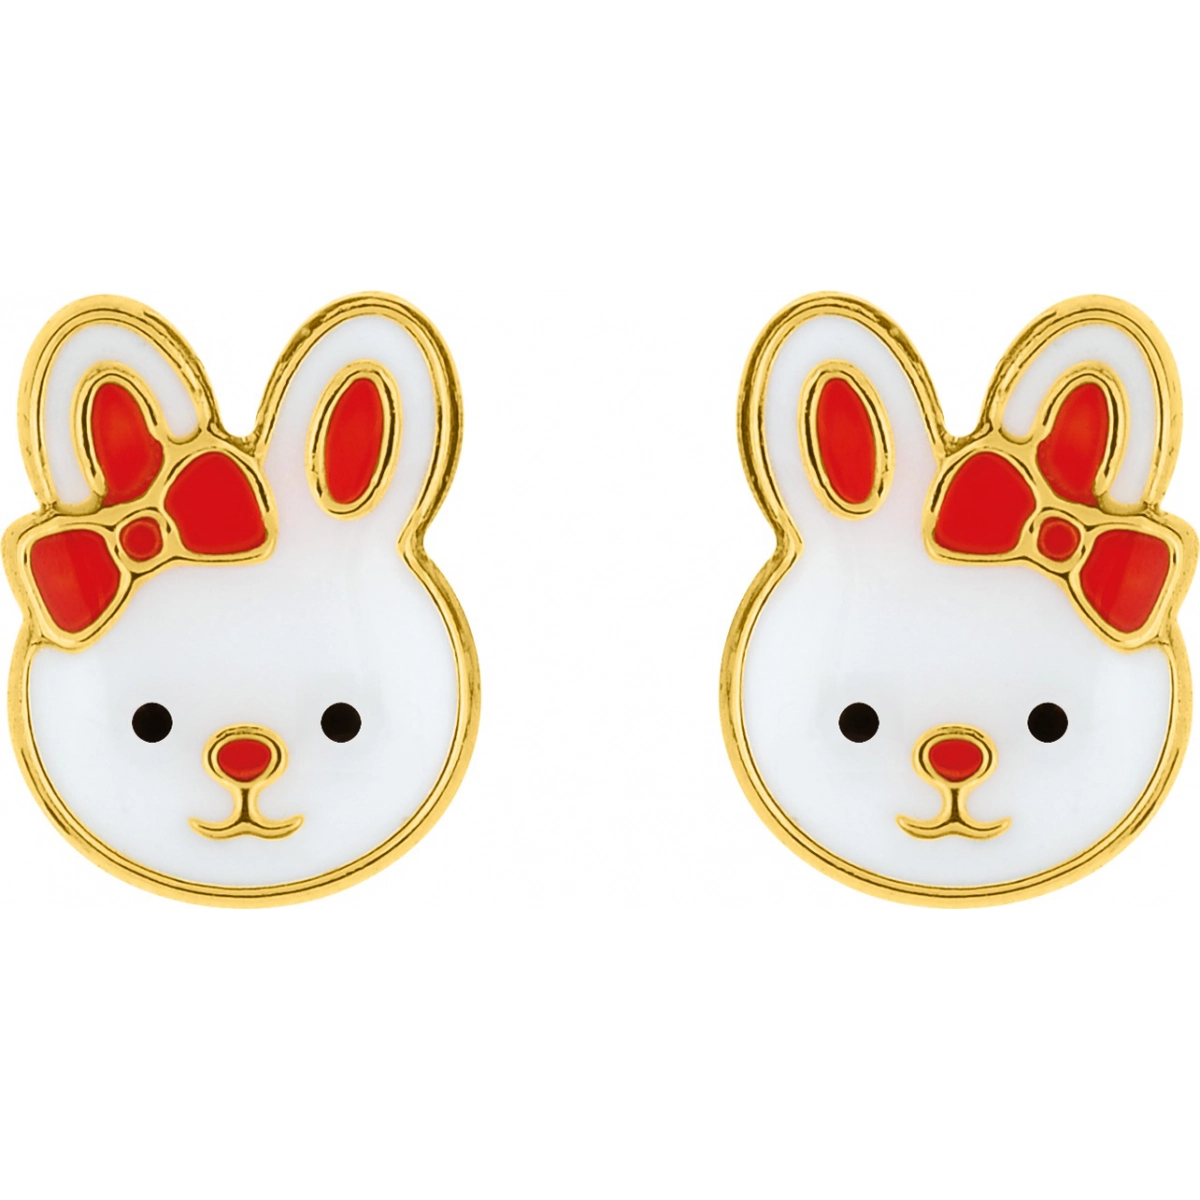 Earrings pair laquered 9K YG  Lua Blanca  S12.28007.0